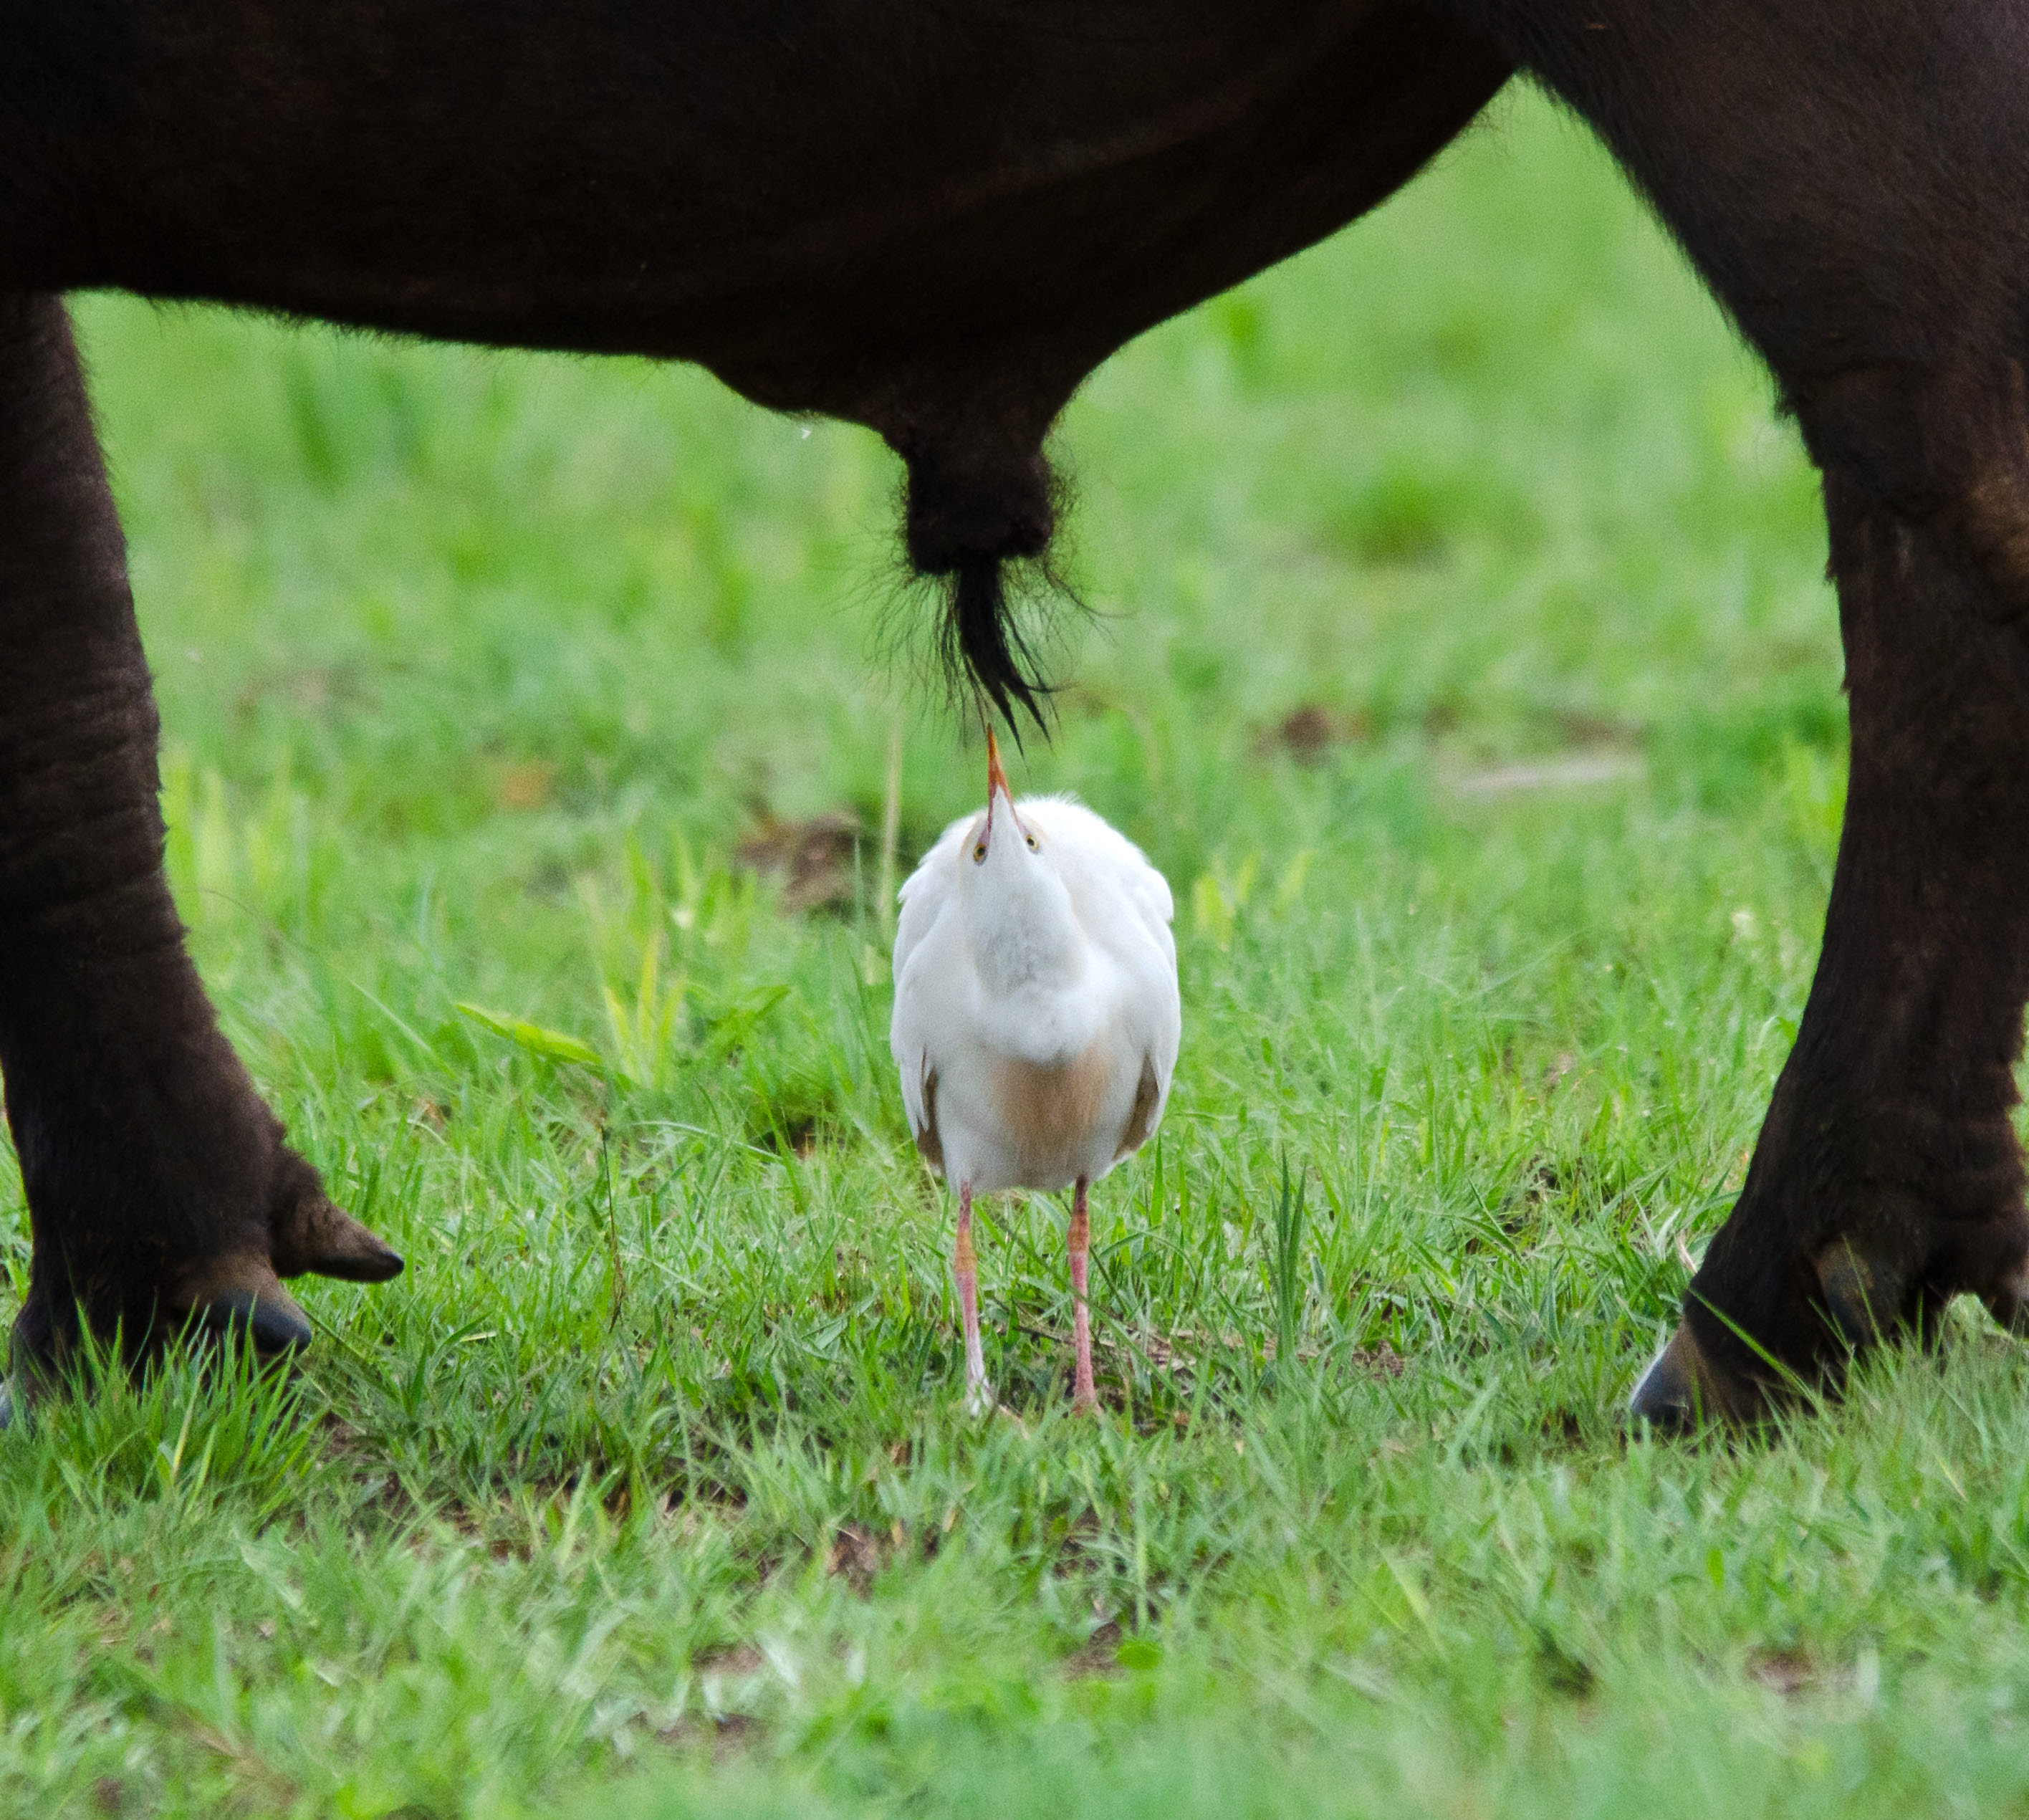 Um pequeno pássaro está abaixo dos órgãos genitais de um búfalo.